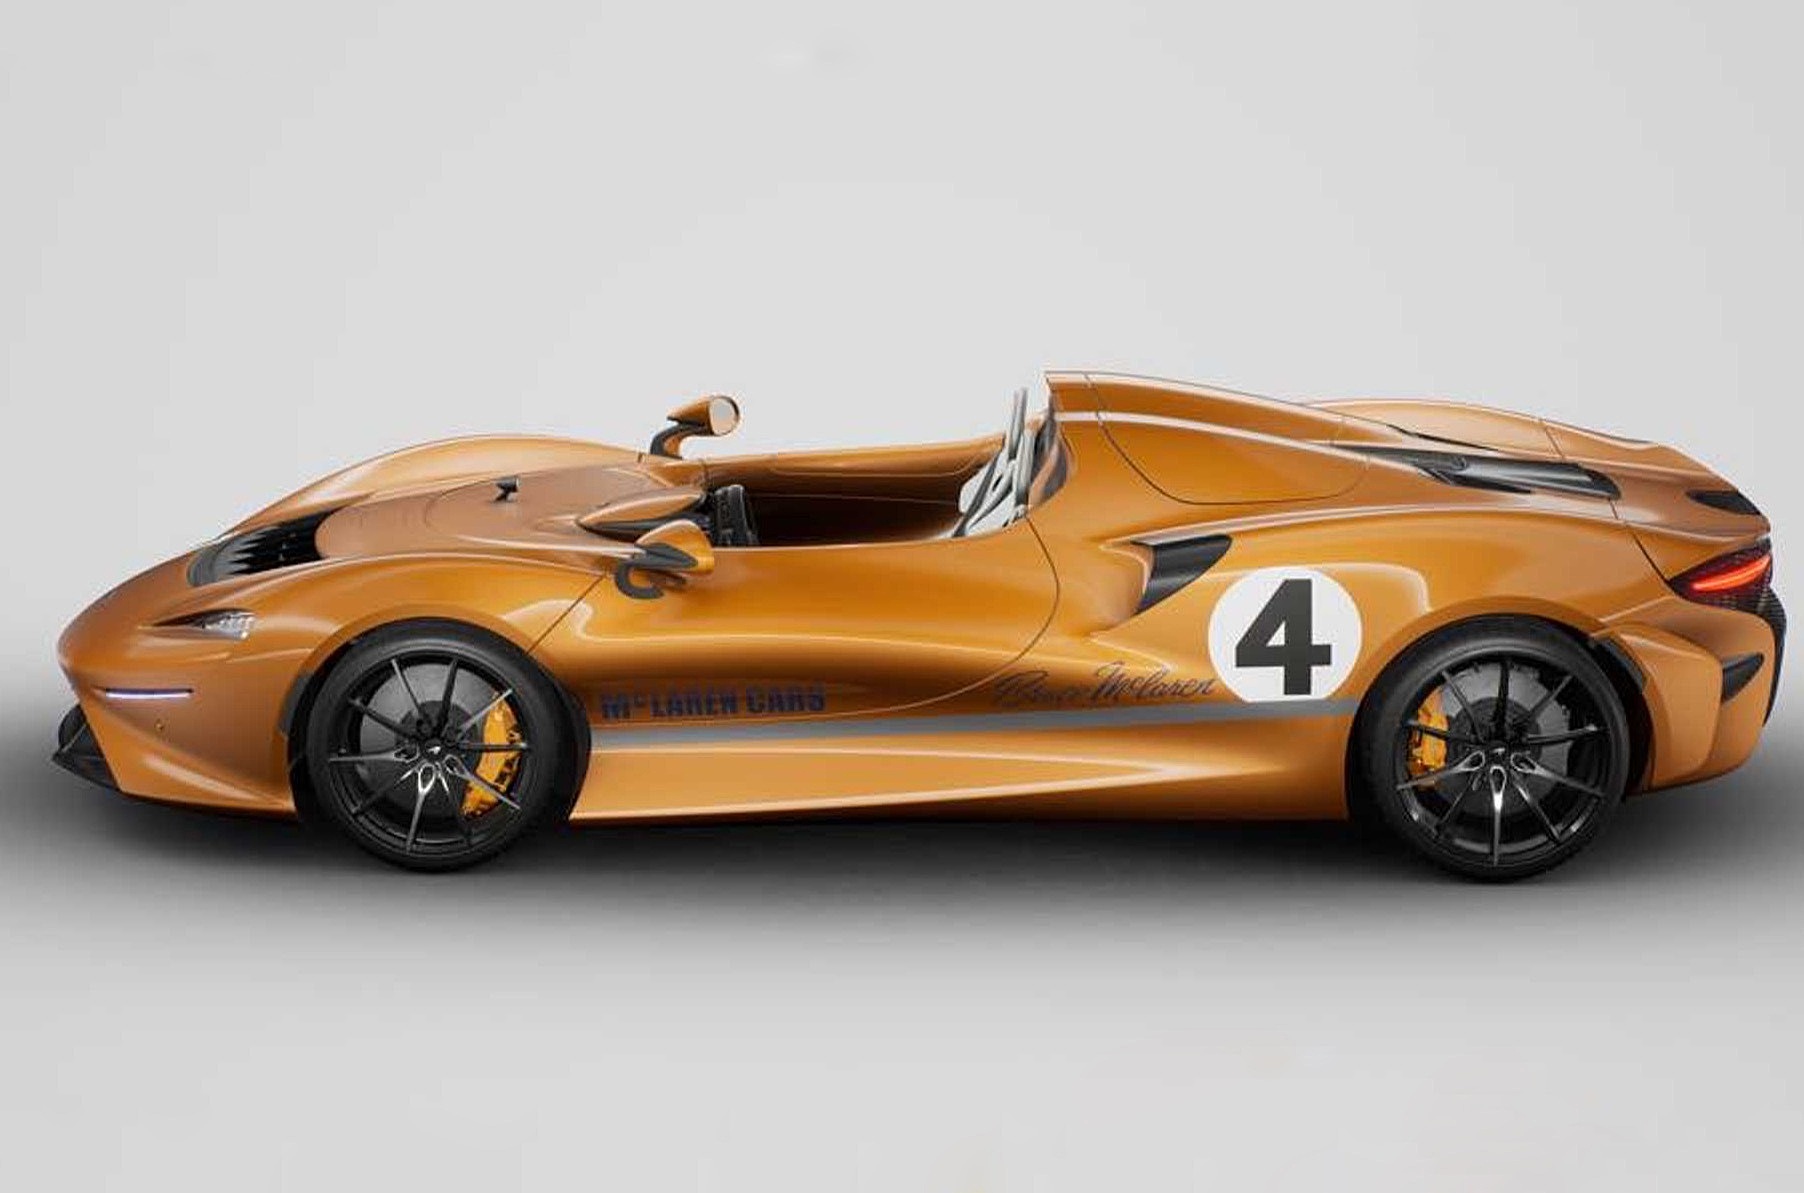 В память о первом оранжевом McLaren построили уникальный суперкар